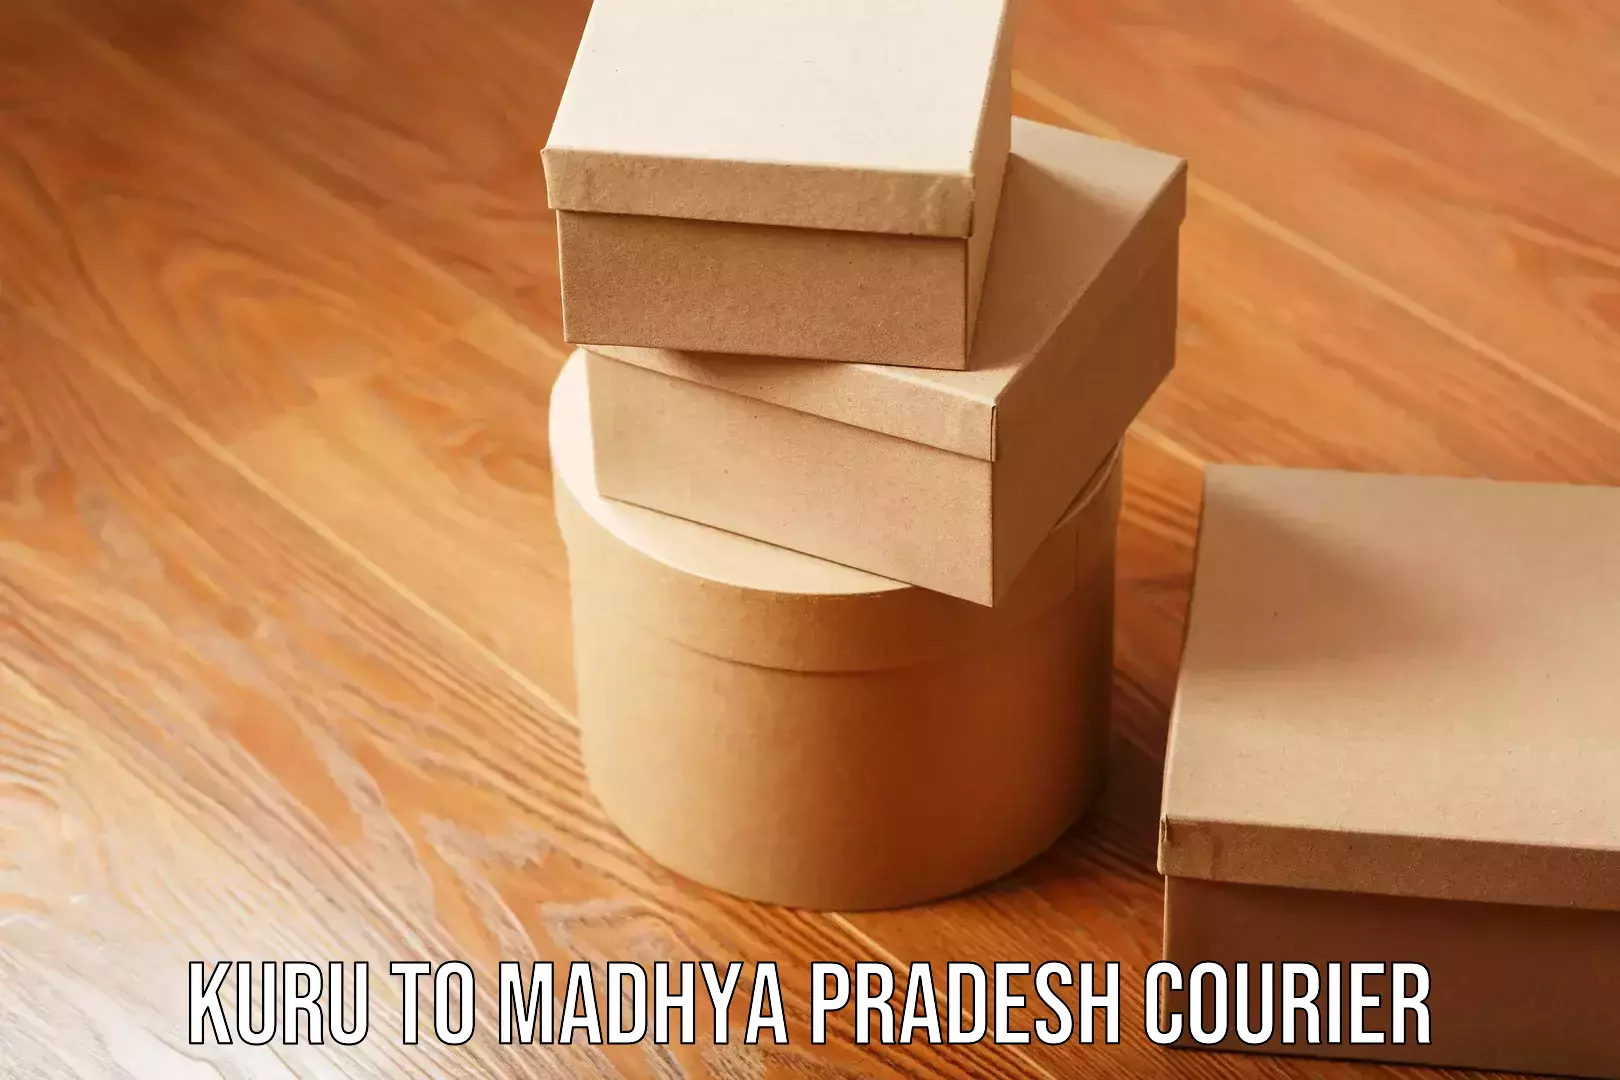 Trusted moving company Kuru to Madhya Pradesh